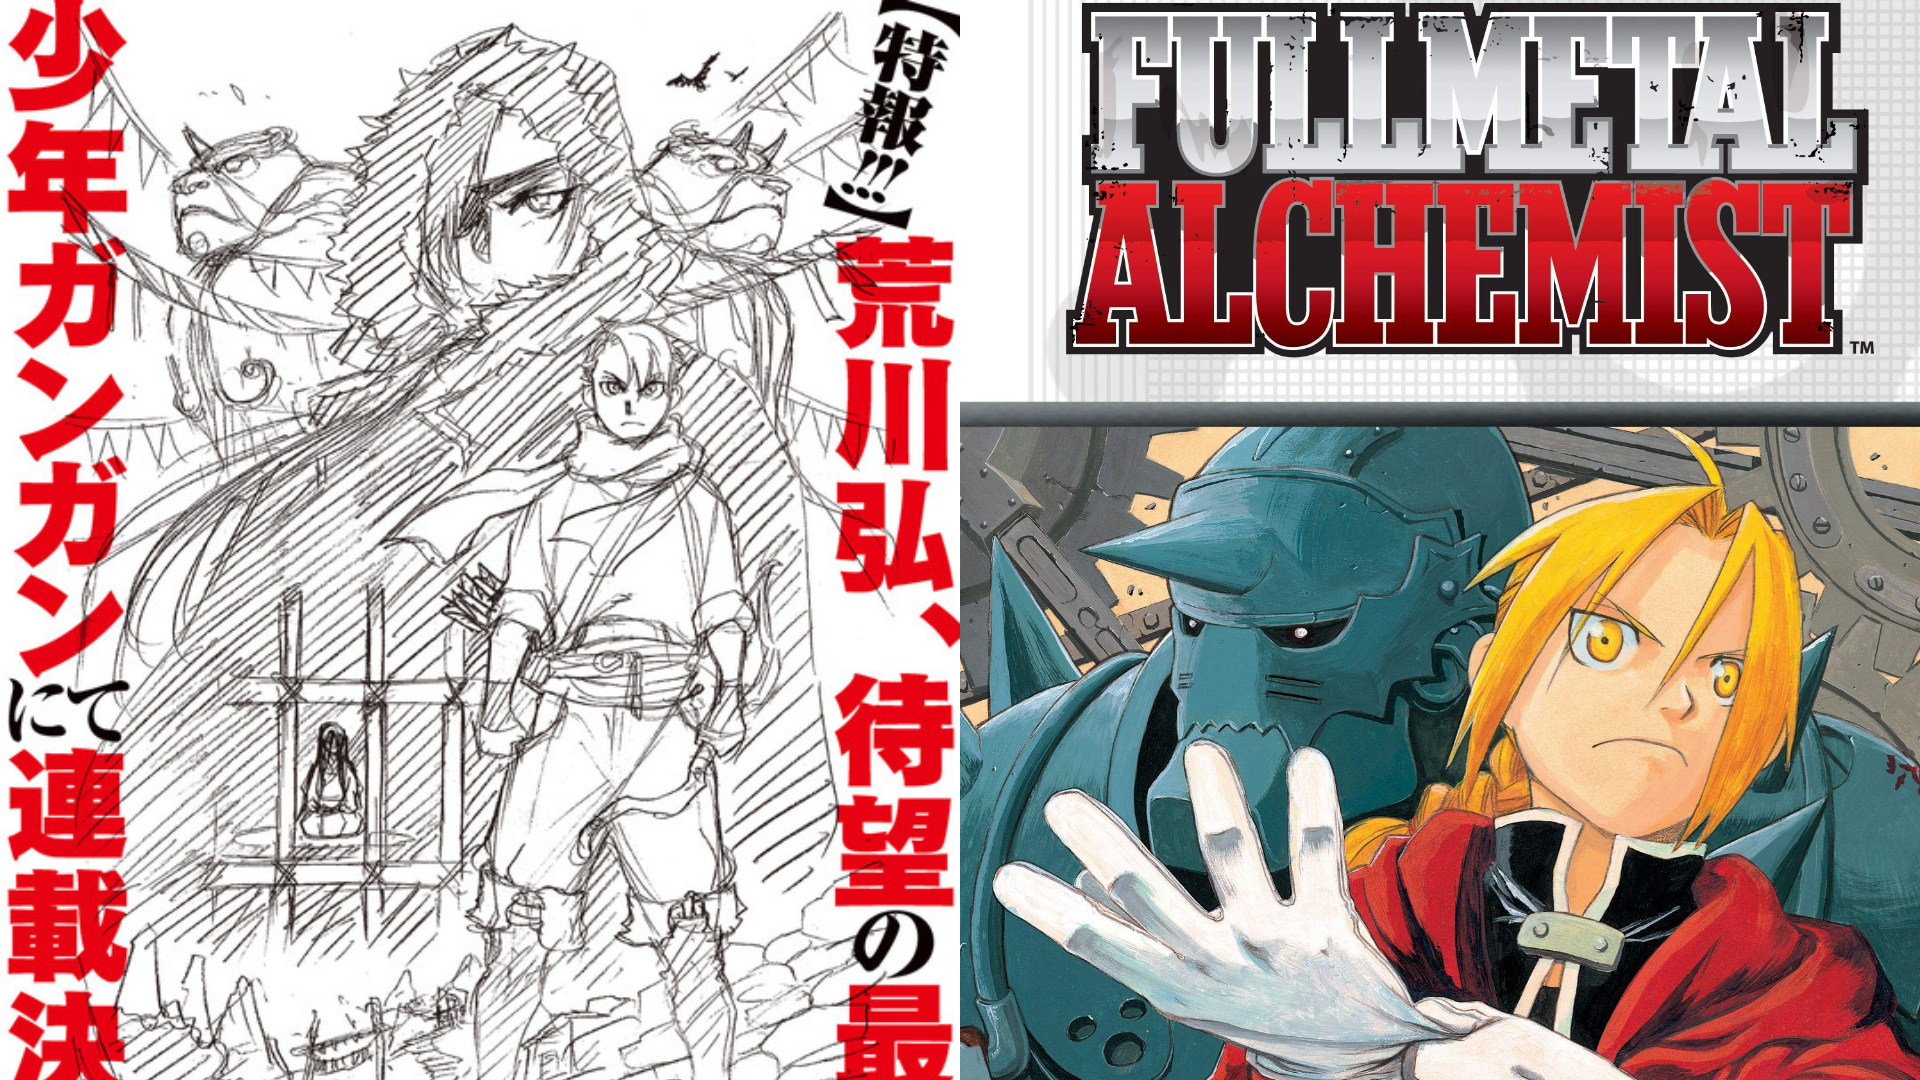 New Fullmetal Alchemist Manga